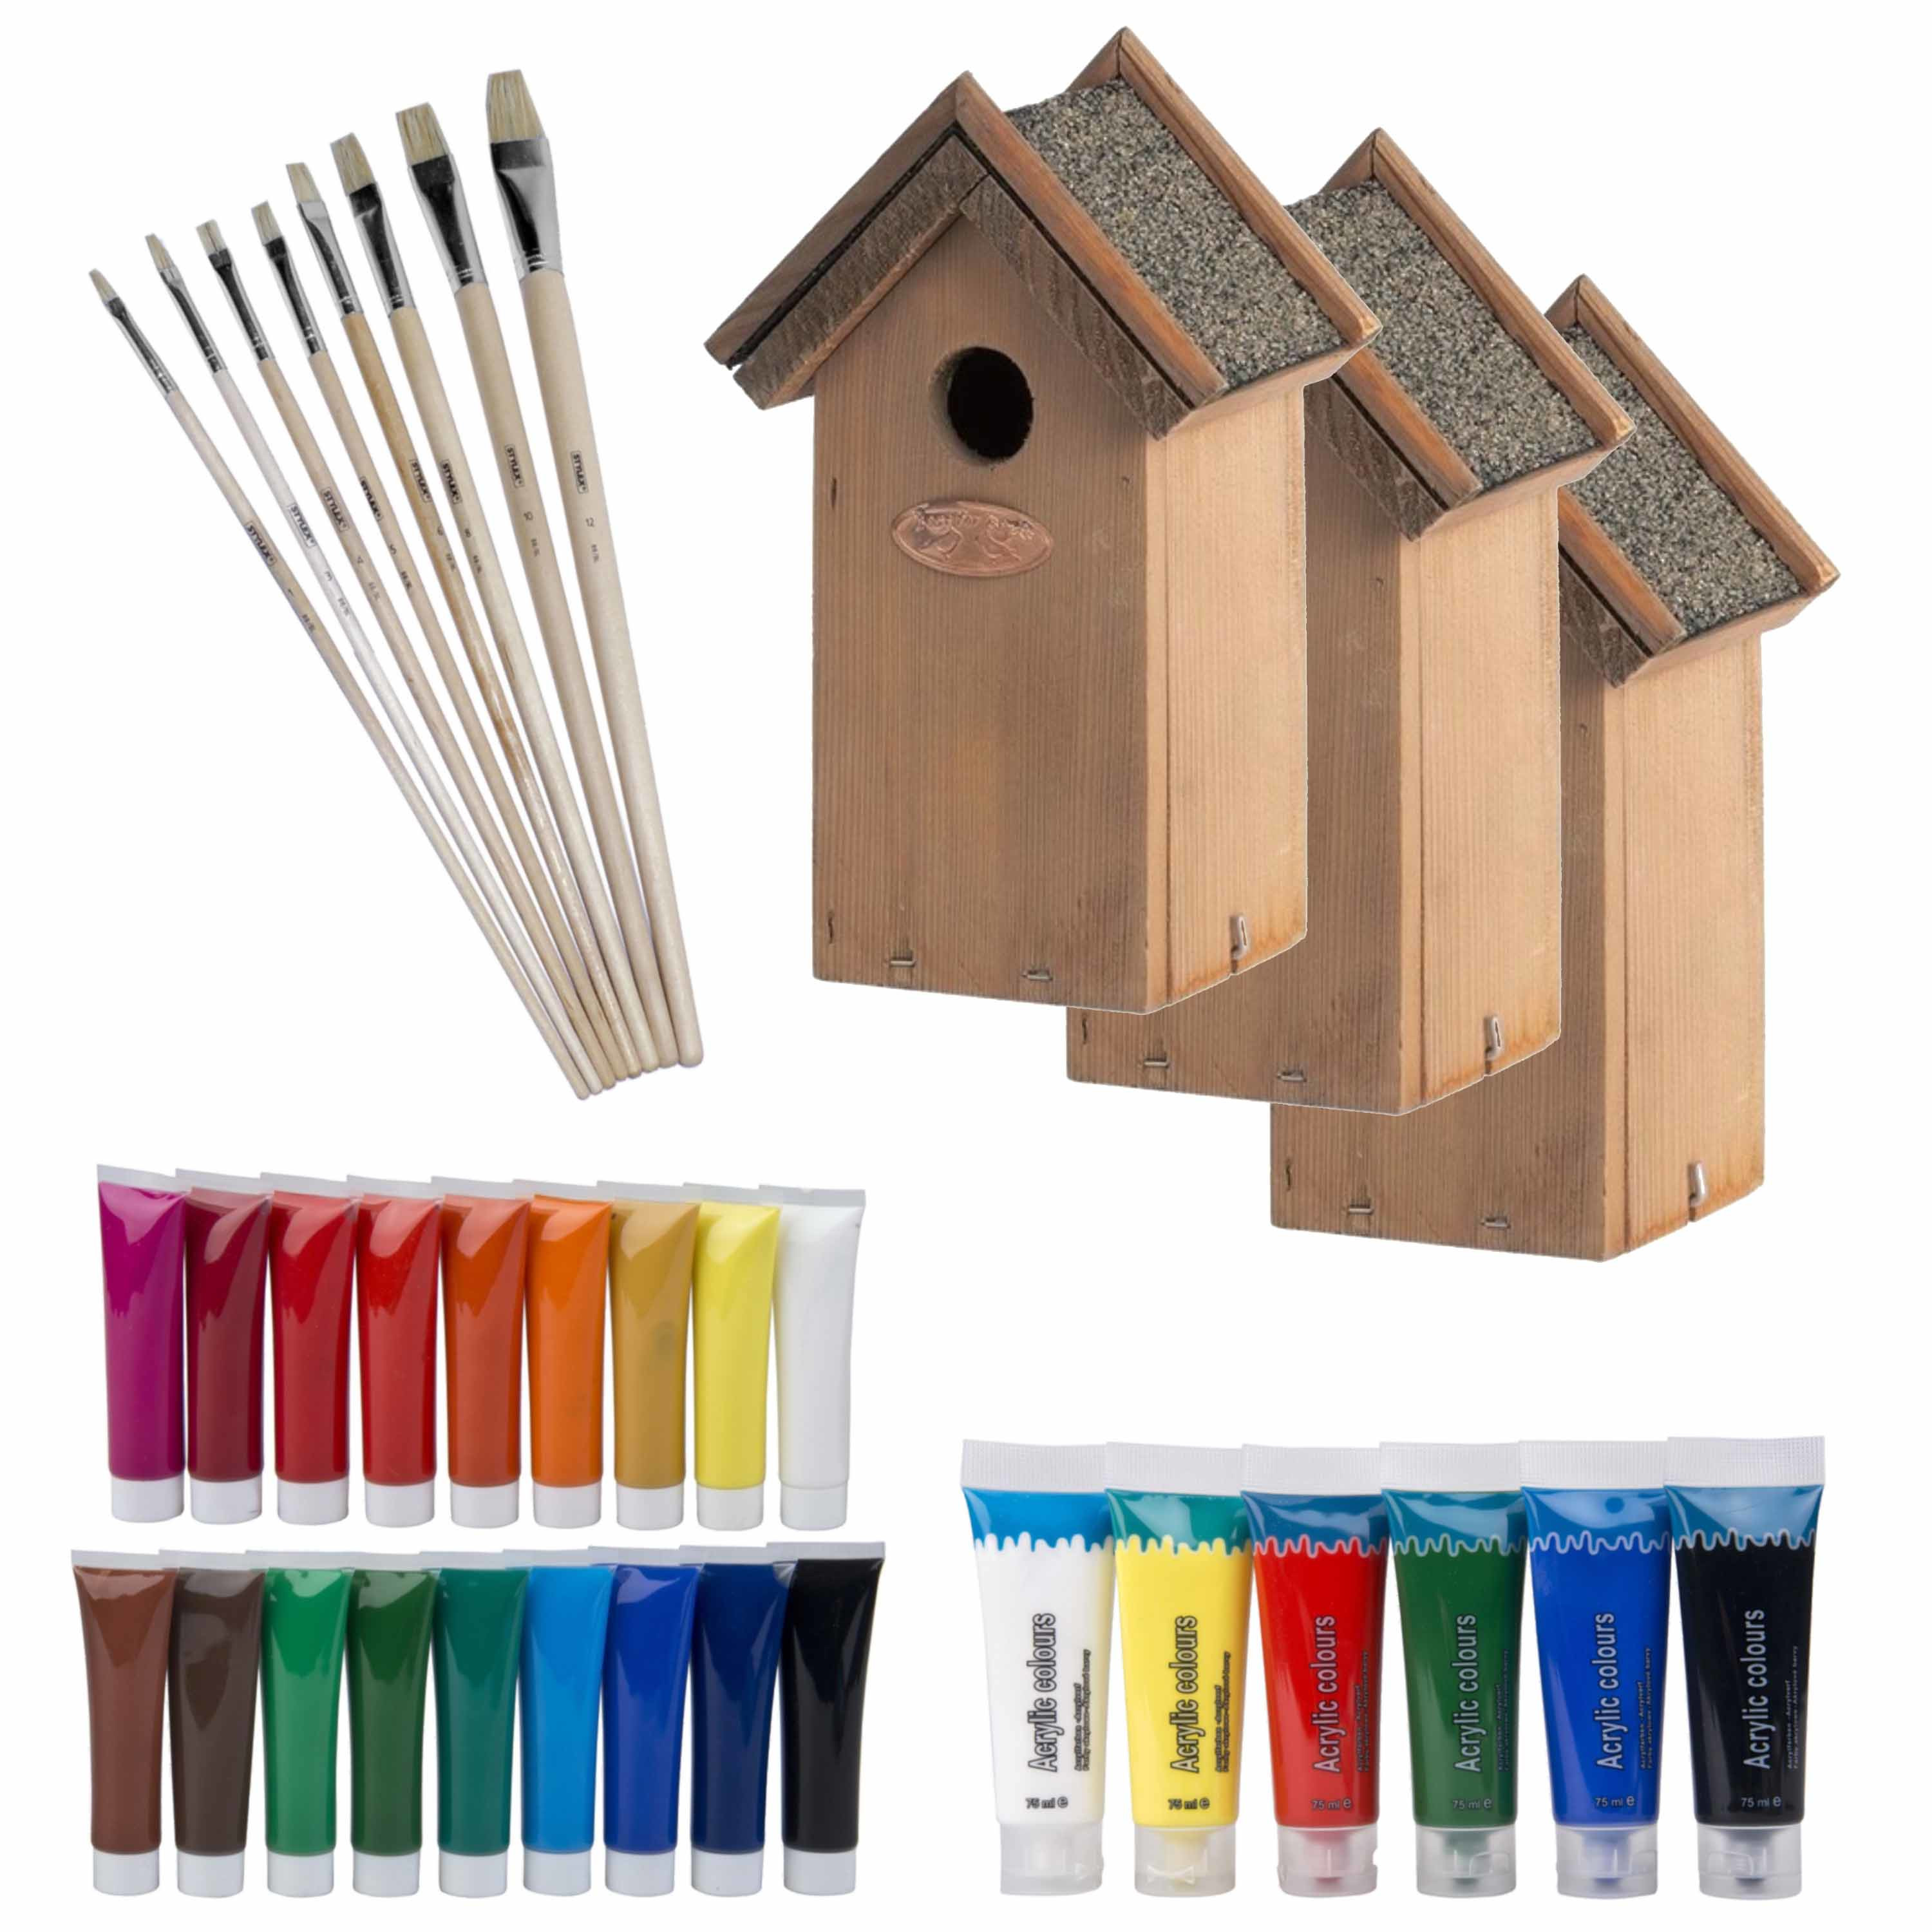 8x stuks houten vogelhuisje-nestkastje 22 cm Zelf schilderen pakket verf-kwasten